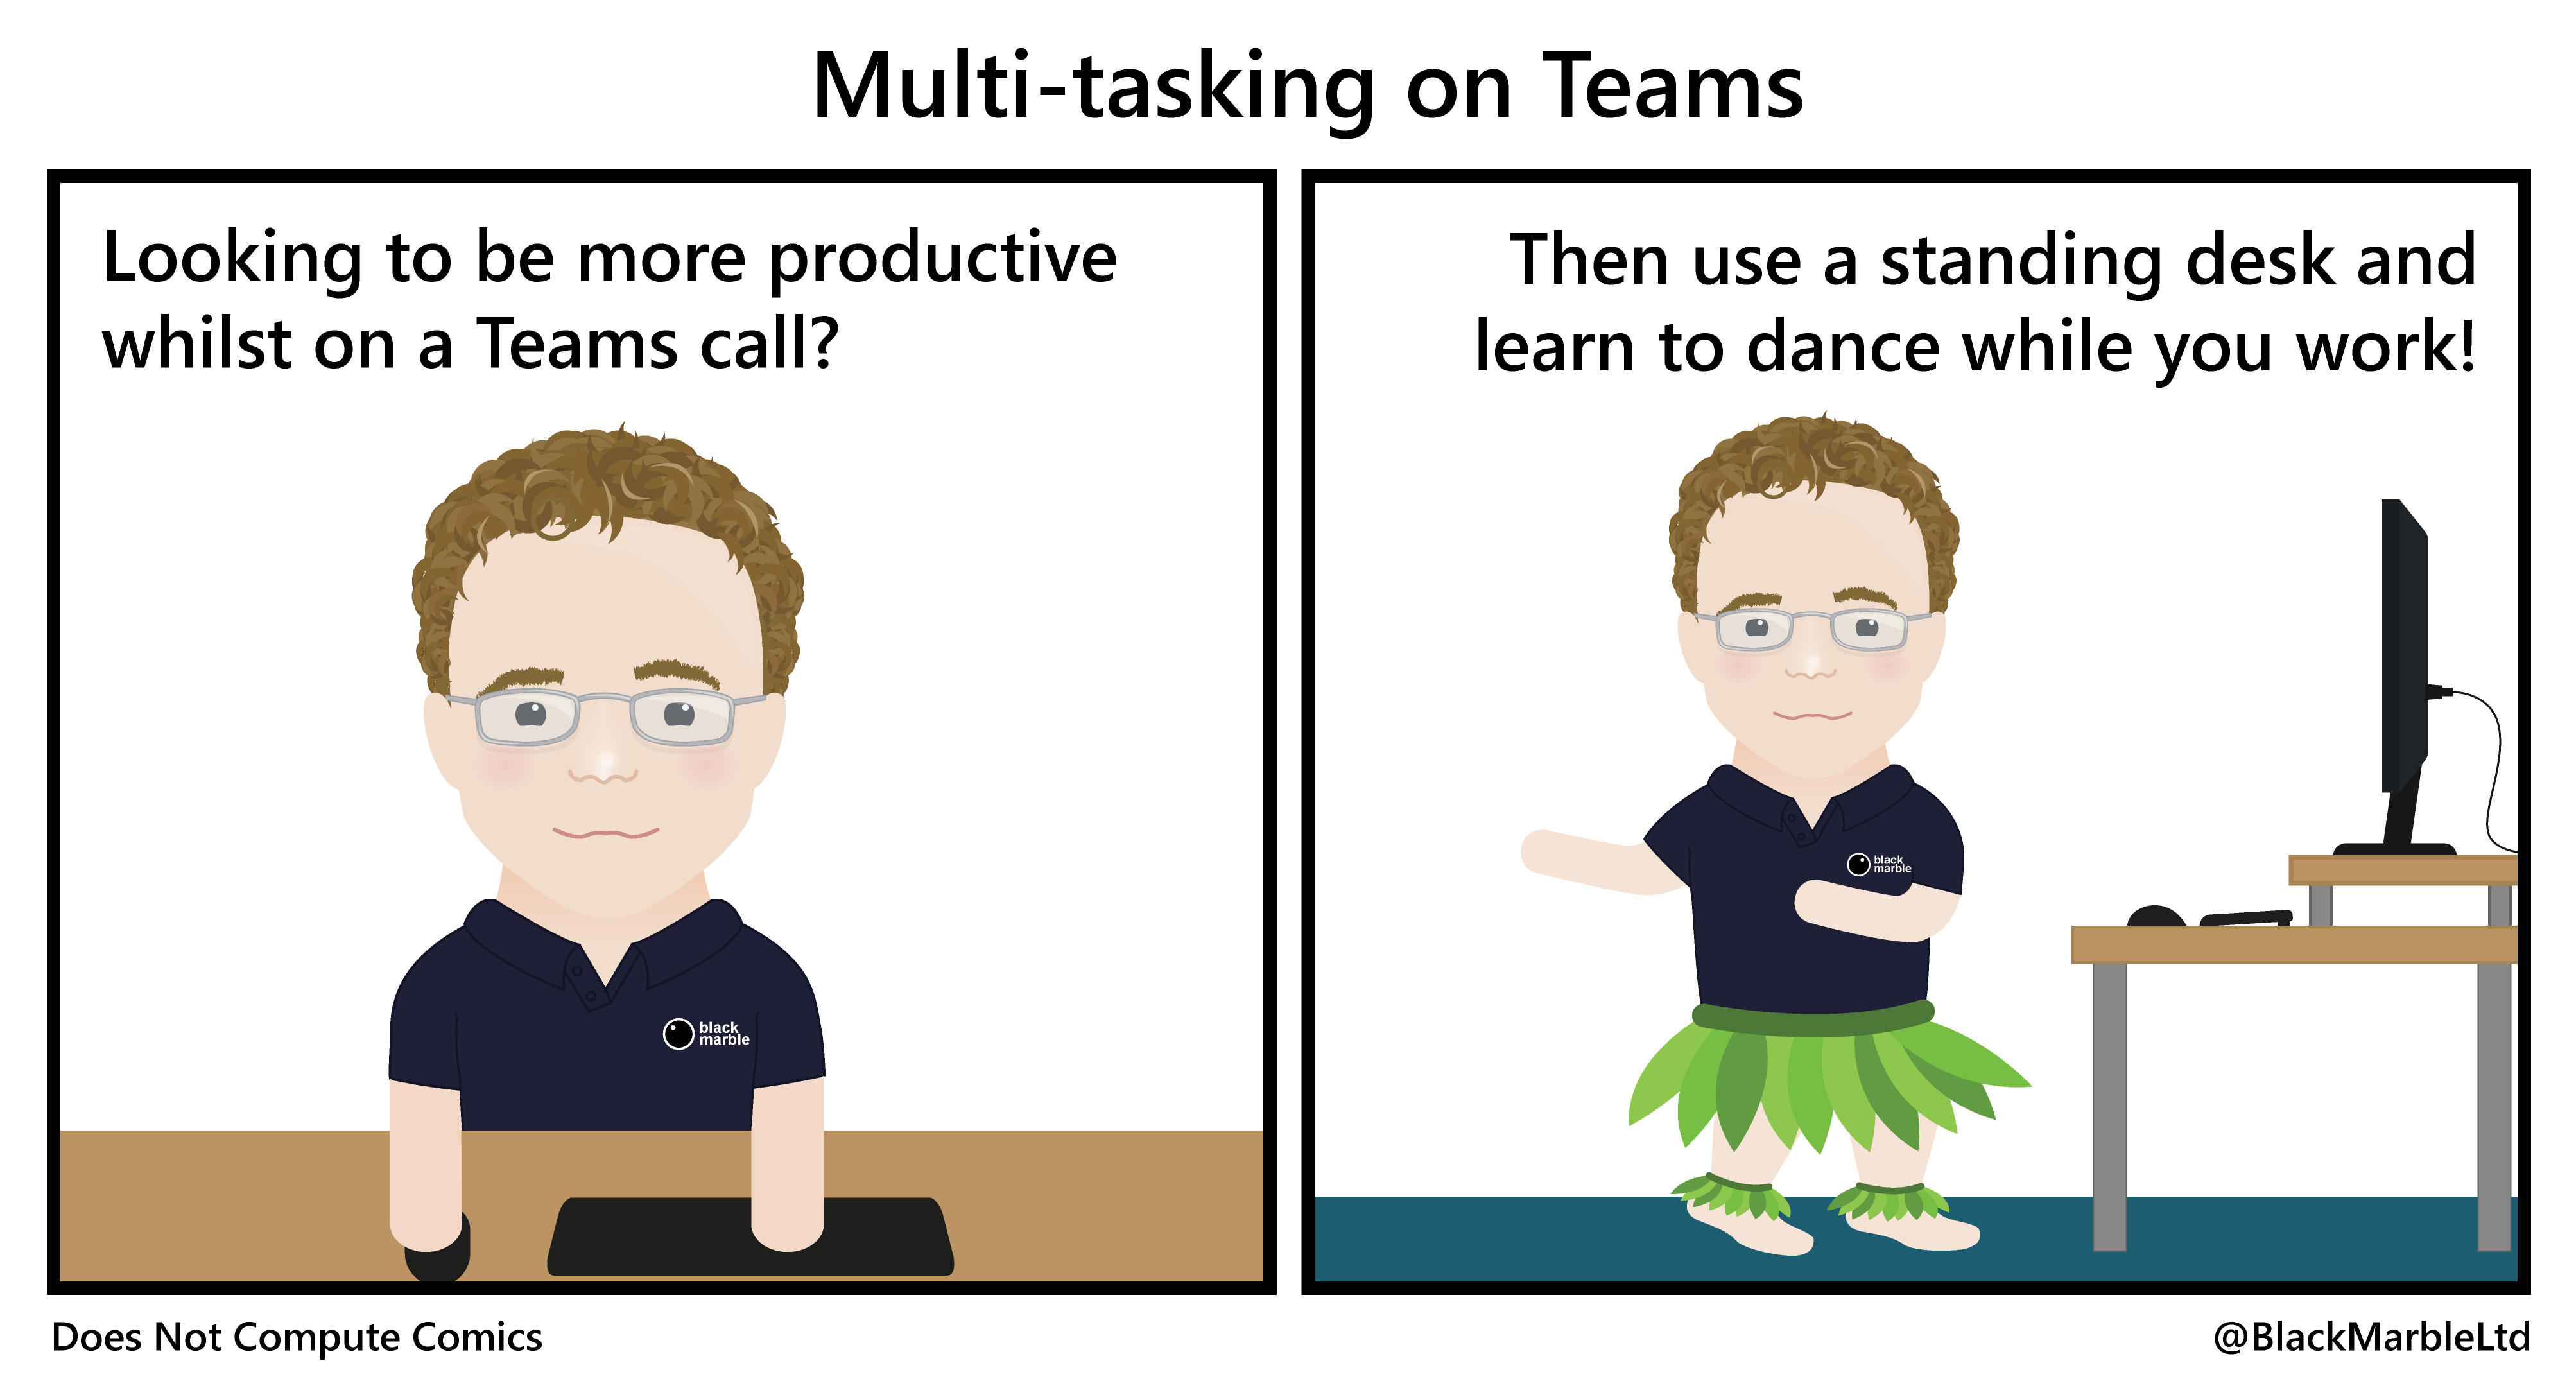 Multitasking on Teams